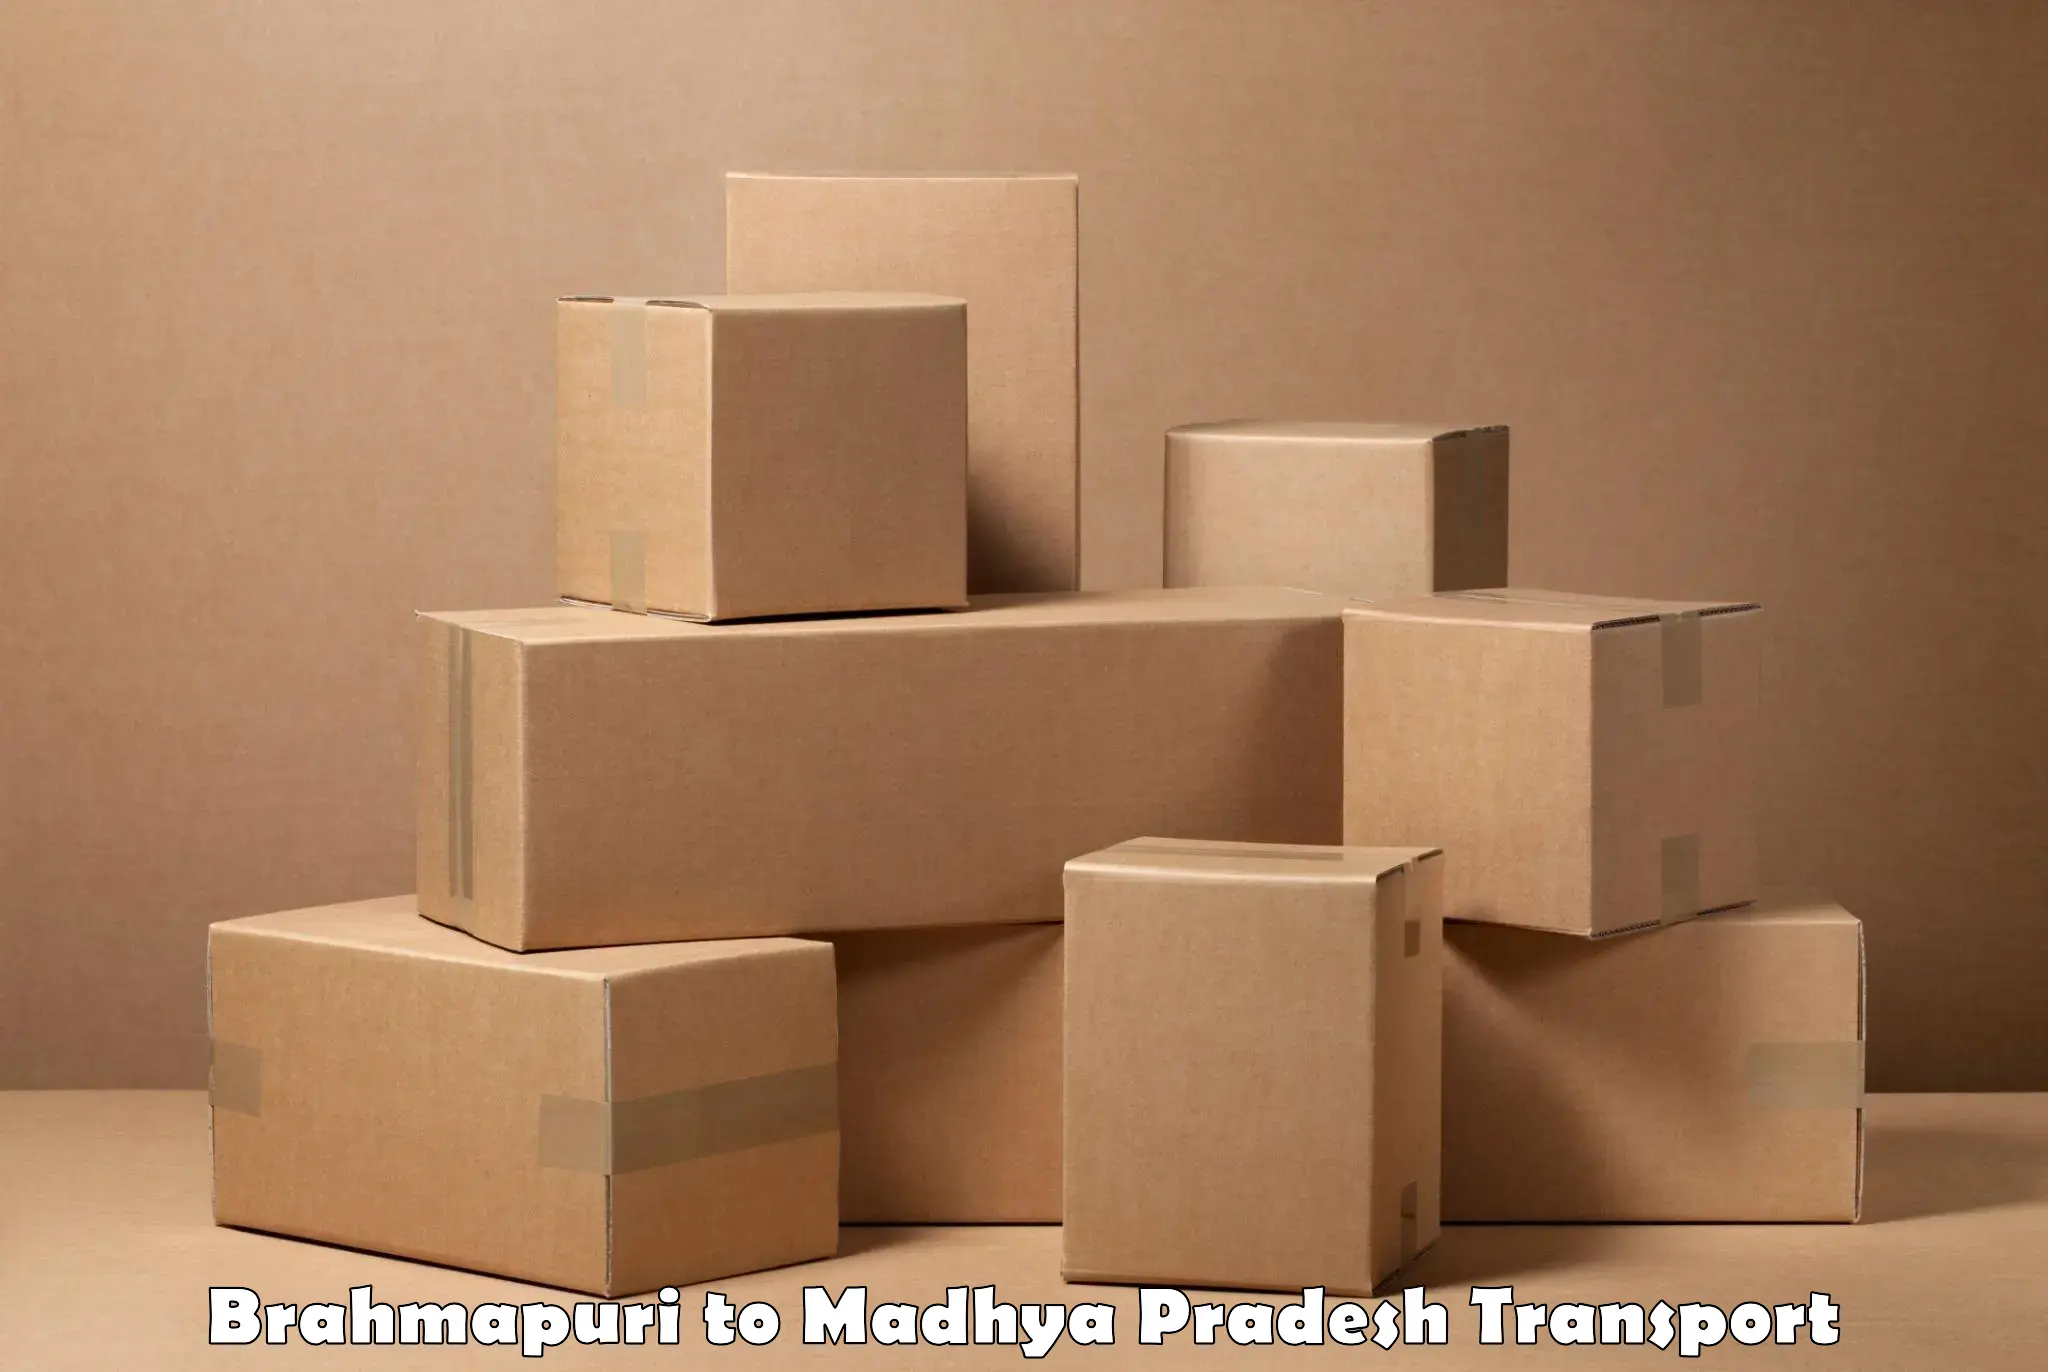 Online transport service Brahmapuri to Amarwara